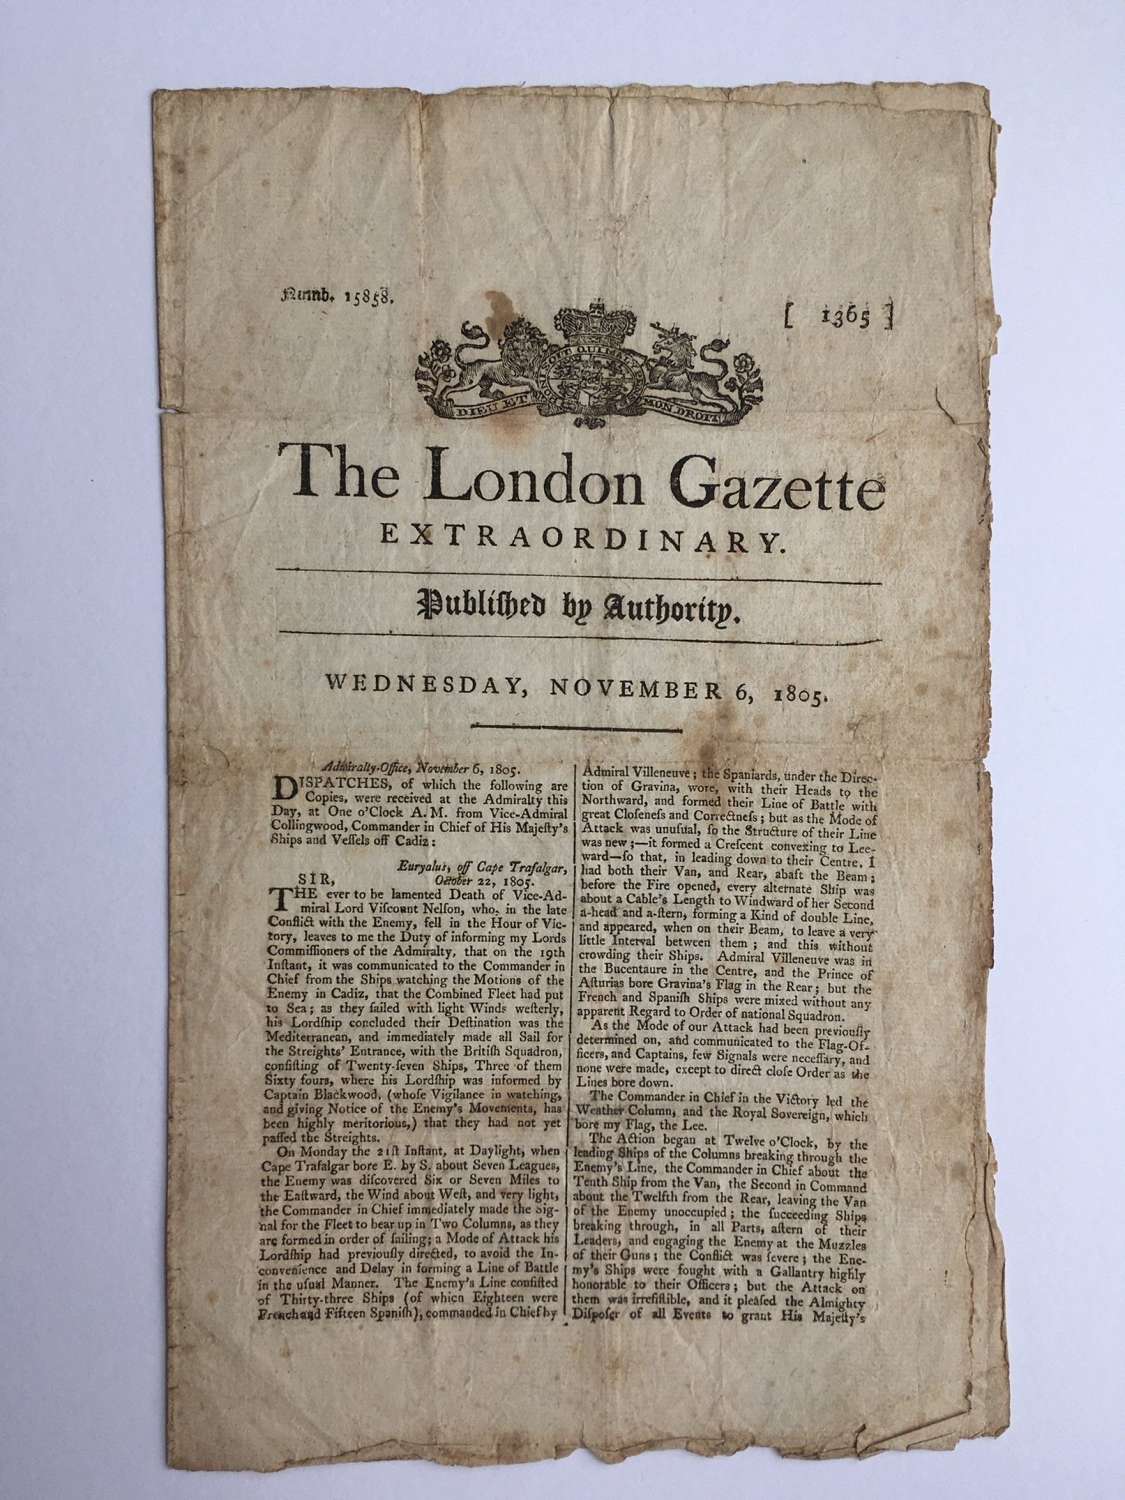 London Gazette EXTRAORDINARY No 15858 Wednesday November 6, 1805